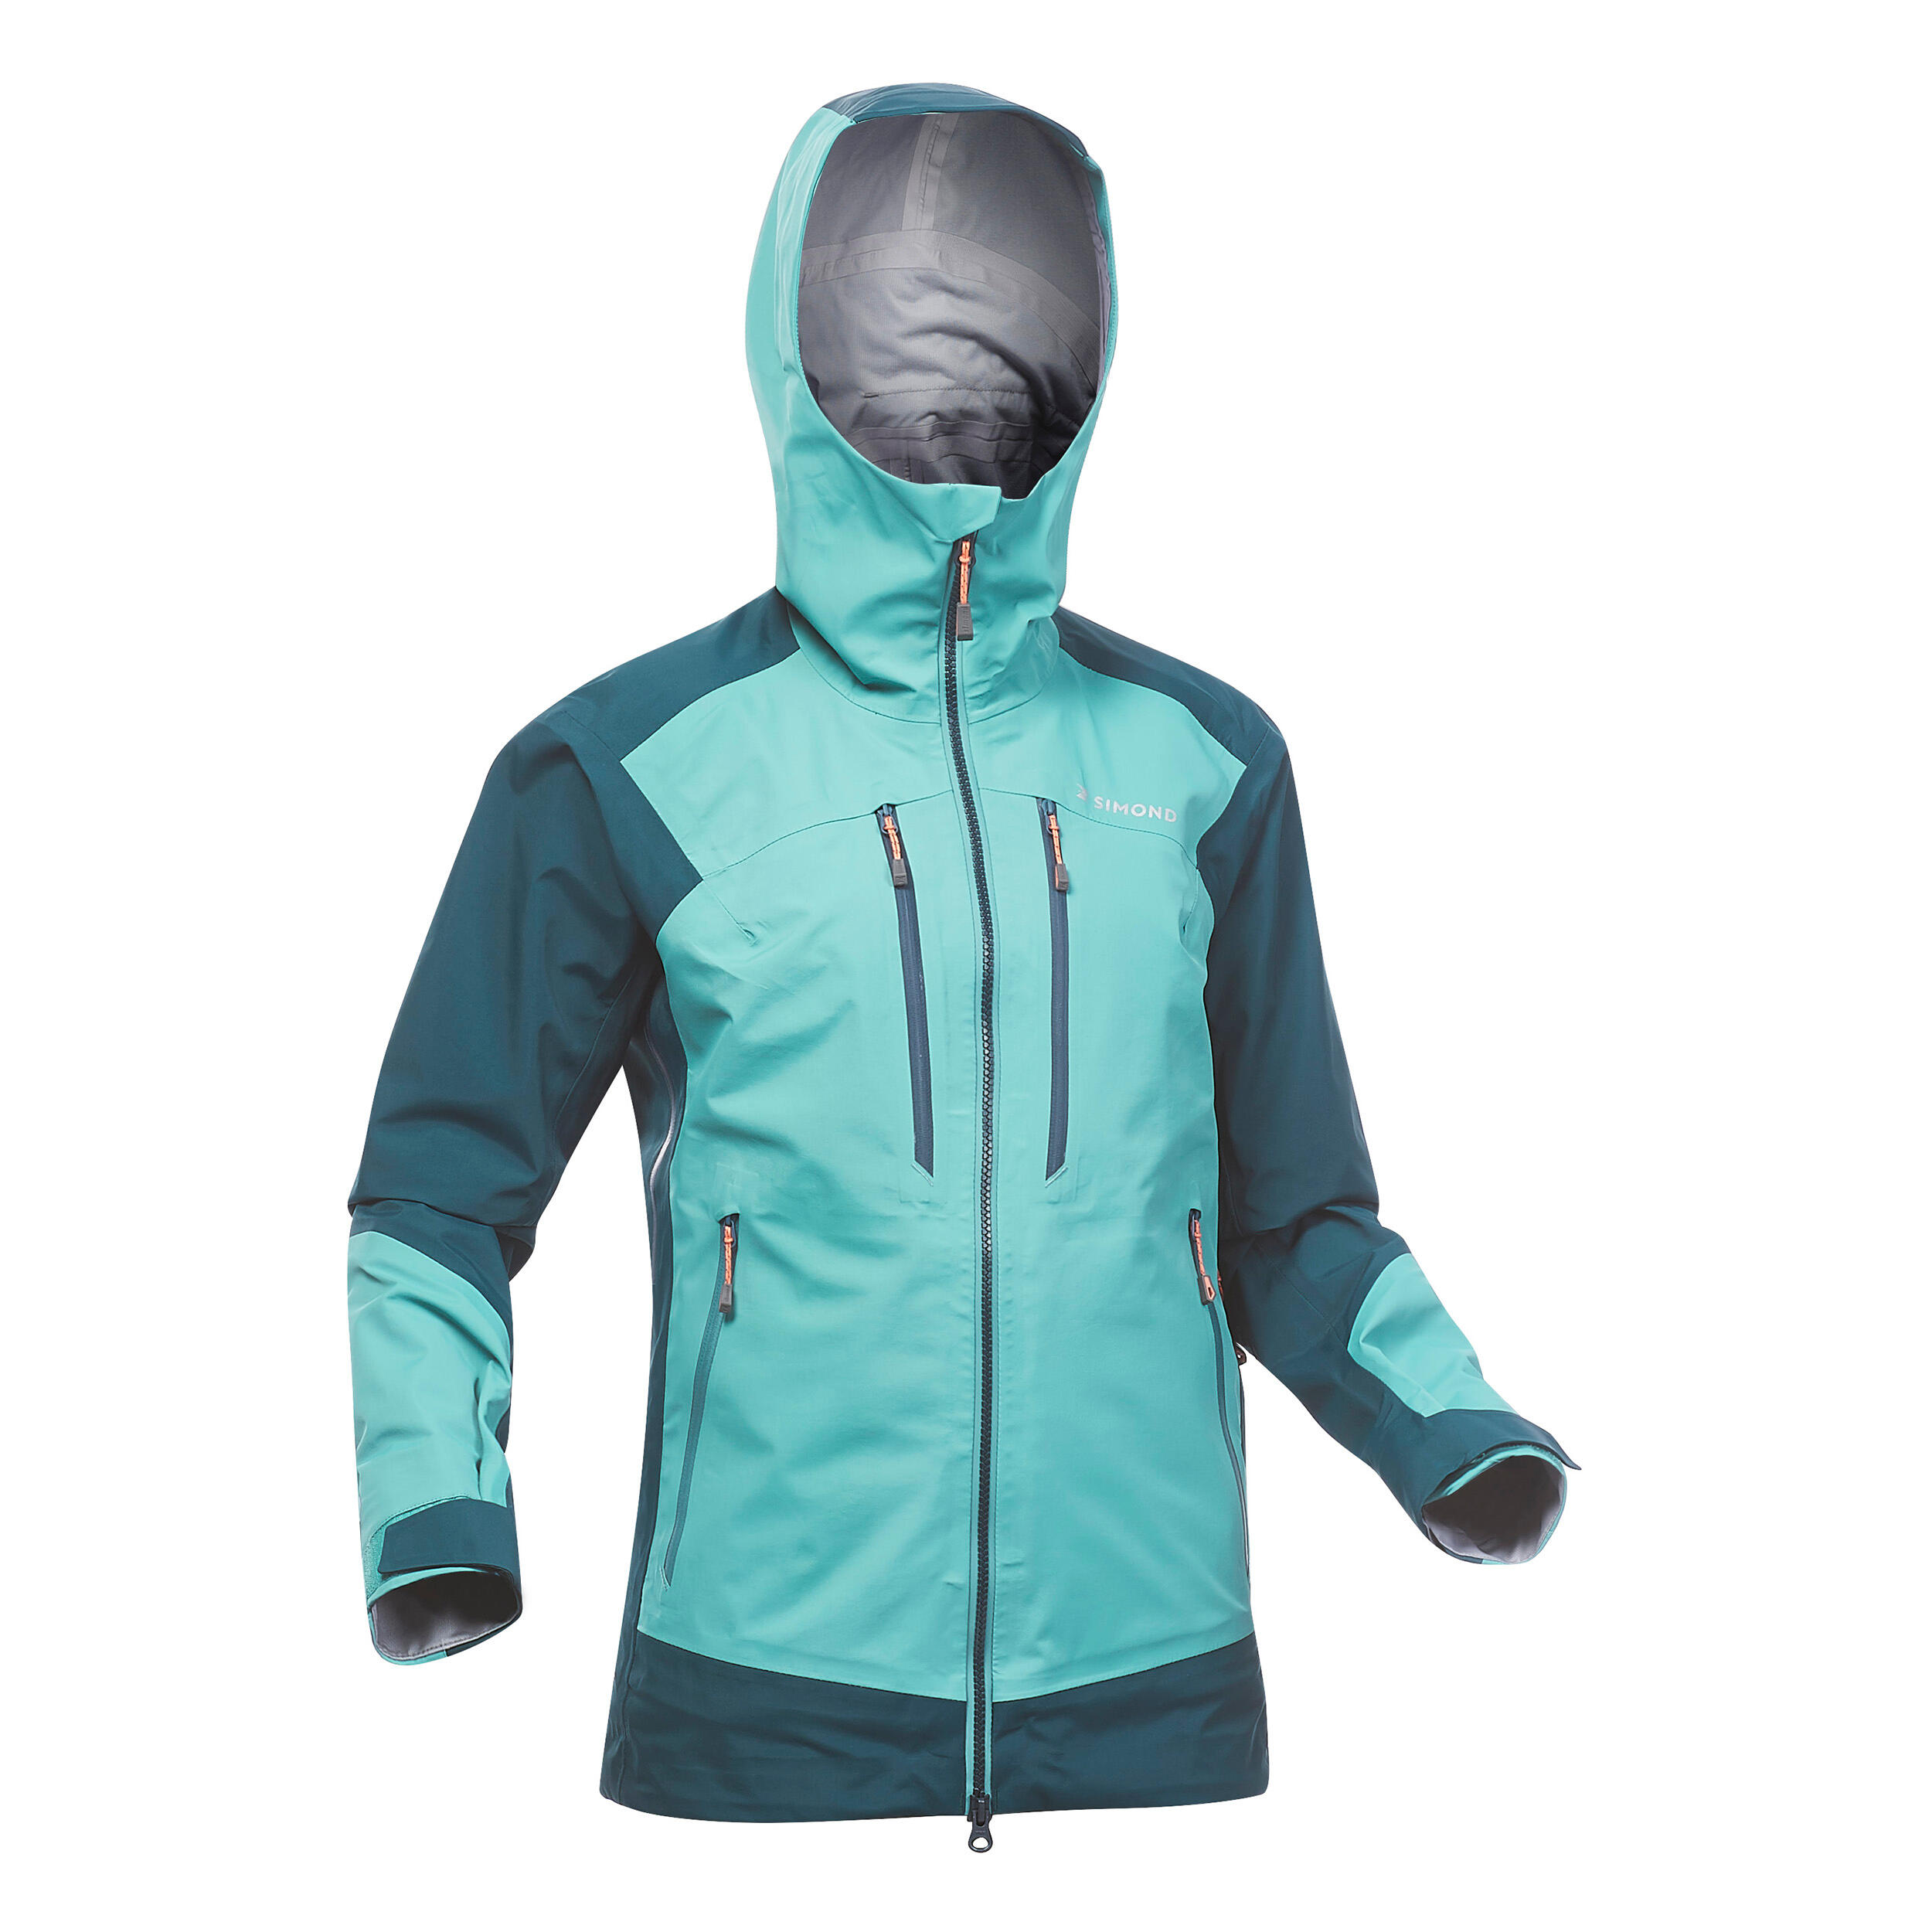 Jachetă impermeabilă Alpinism Evo Verde Damă La Oferta Online decathlon imagine La Oferta Online